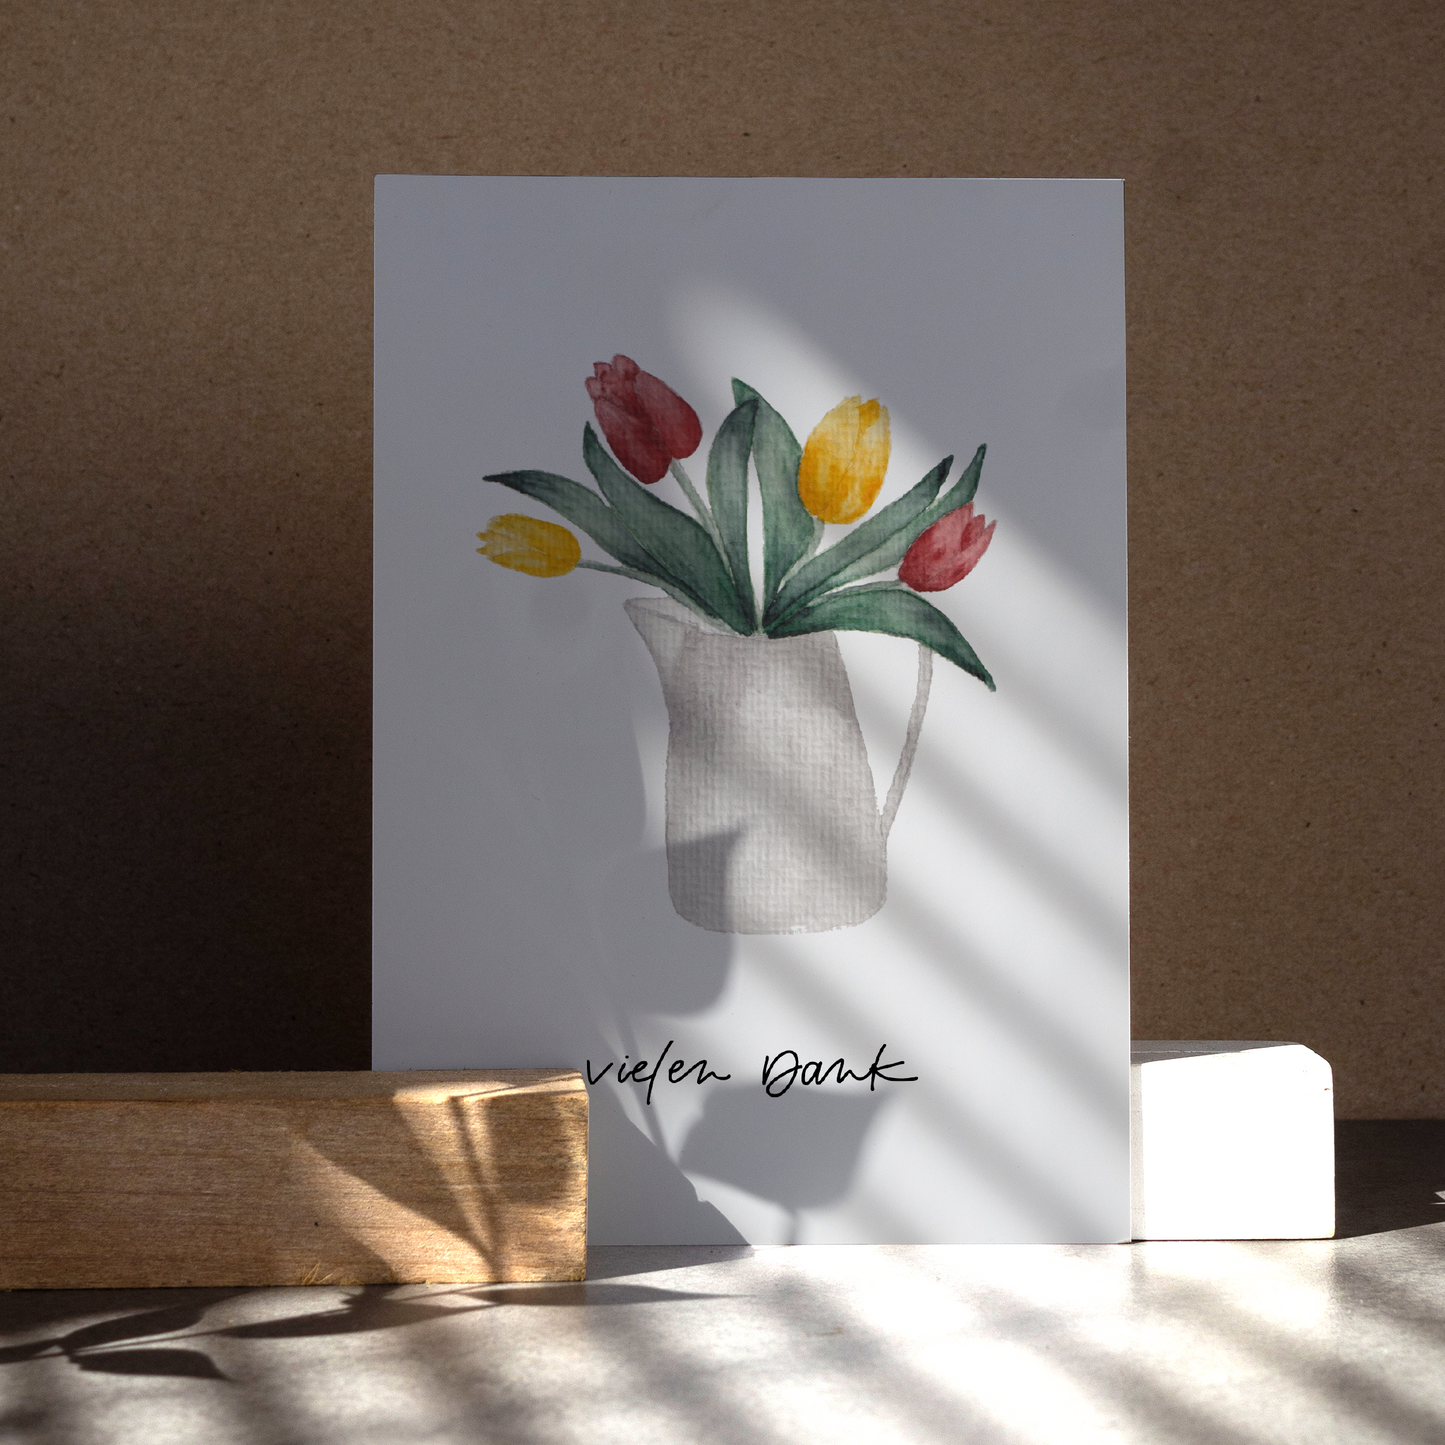 Aquarell-Postkarte DIN A6, Hochformat, Recyclingpapier, gedruckt in Deutschland. Gelbe uns rote Tulpen in einer grau-weißen Kanne. Text: ,,vielen Dank''. Nahansicht.